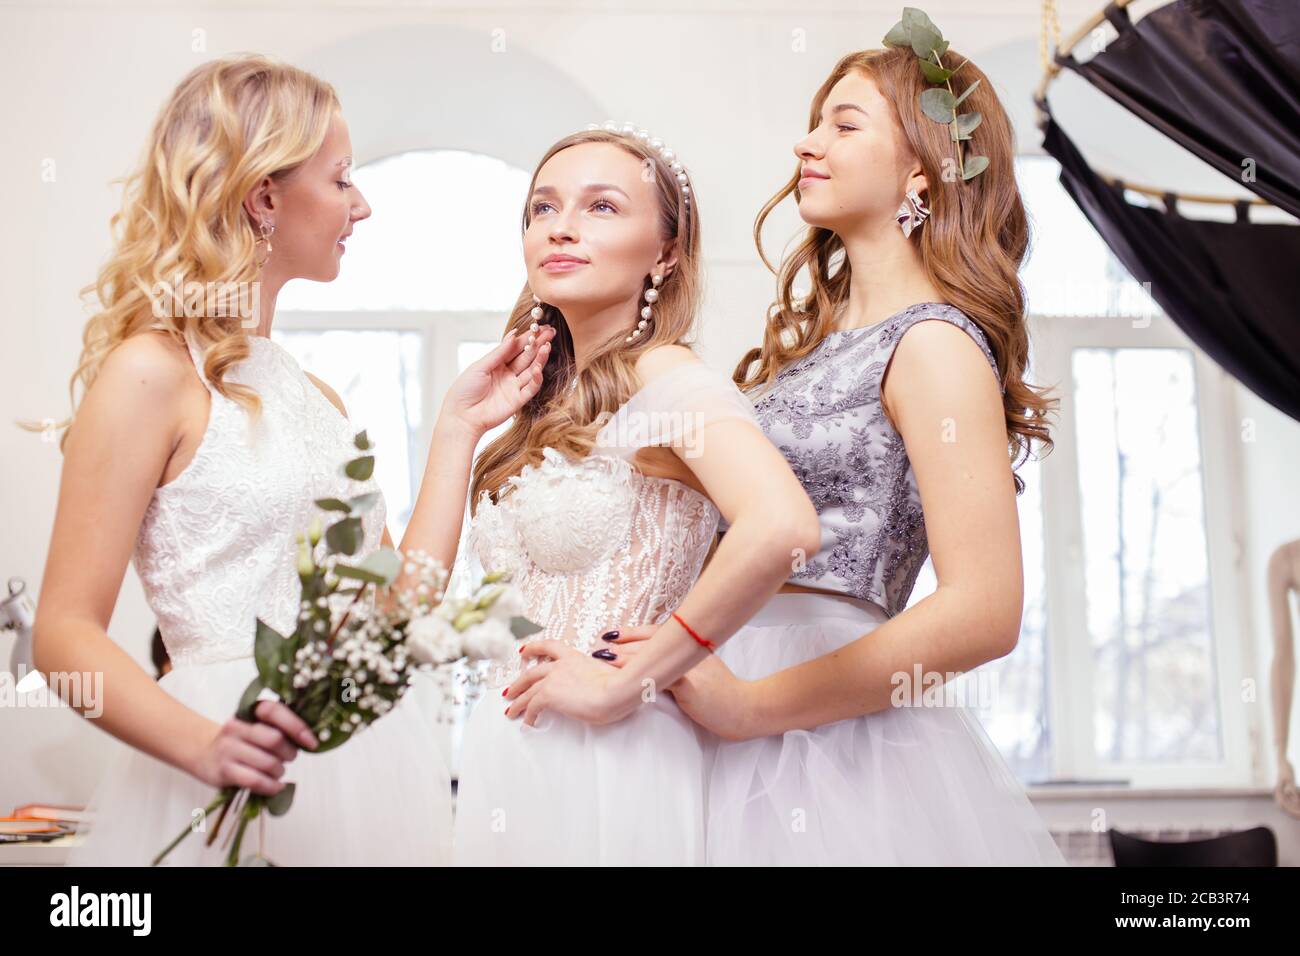 Junge kaukasische Freunde wählen, versuchen auf Hochzeitskleider im Salon, schöne Frauen für die Hochzeit vorbereiten, zu feiern, träumen Braut zu sein Stockfoto